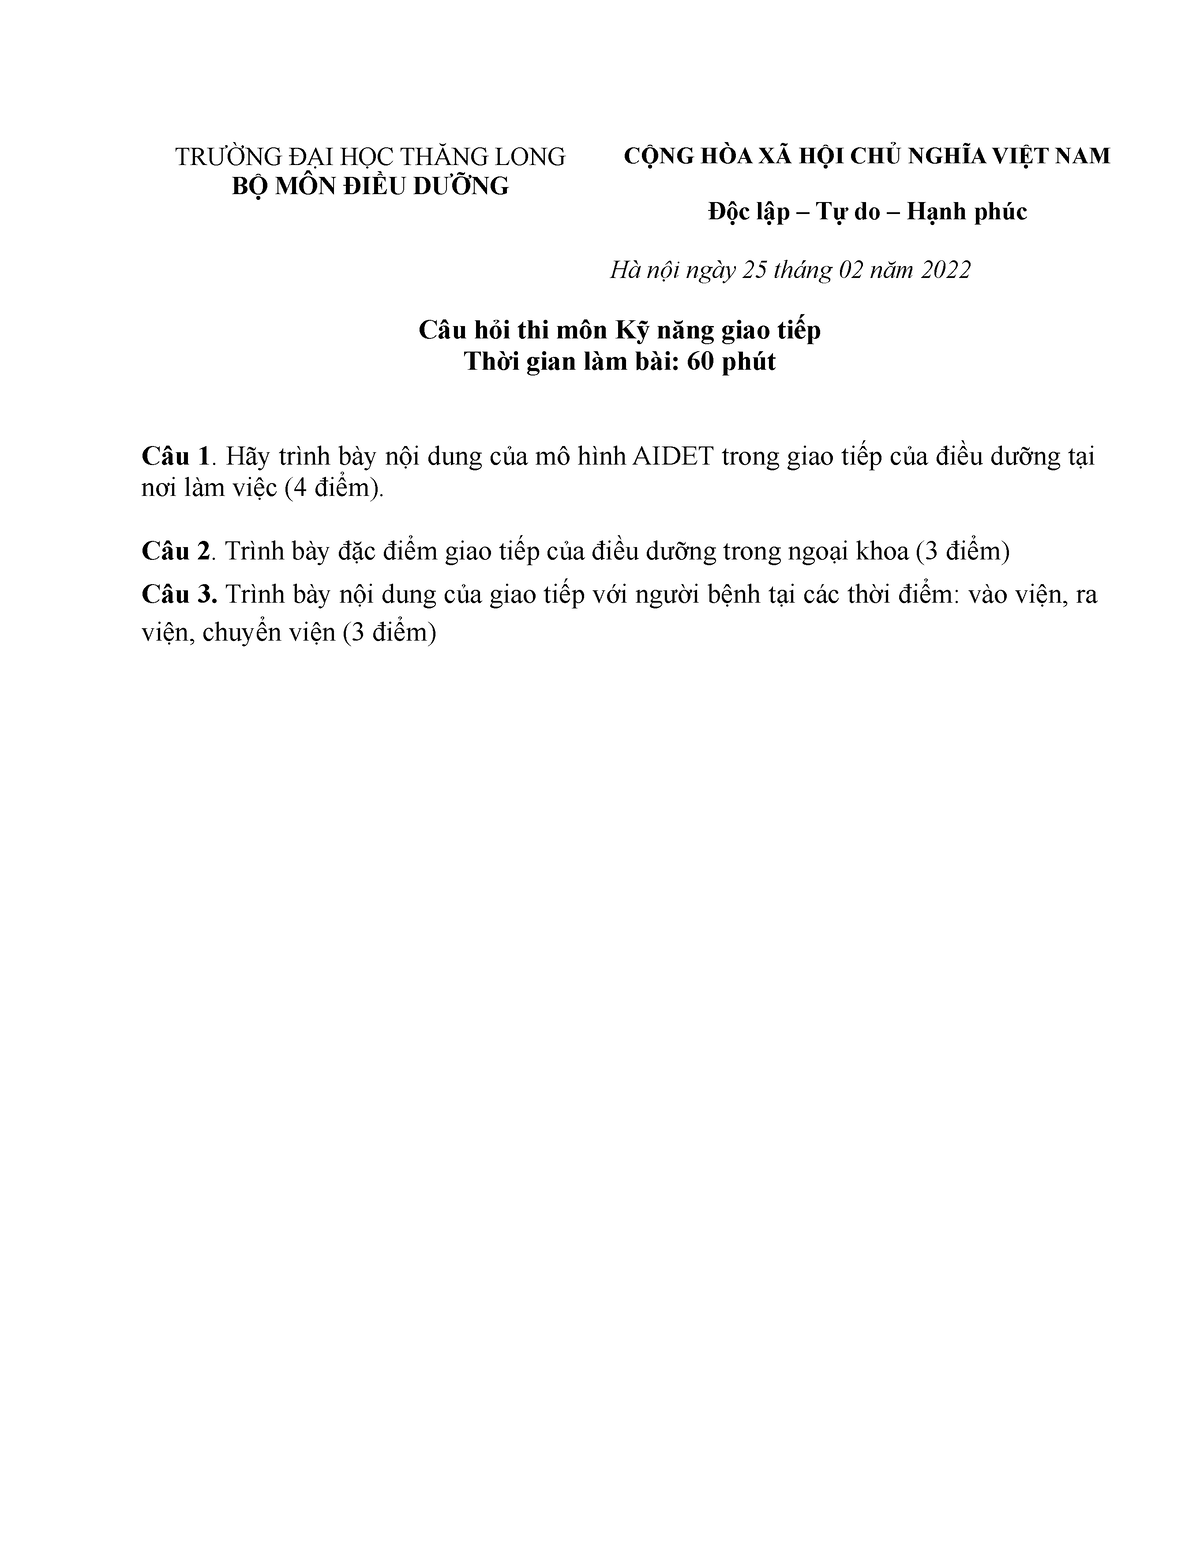 Mô hình giao tiếp Aidet trang 1 tải miễn phí từ tailieuXANH